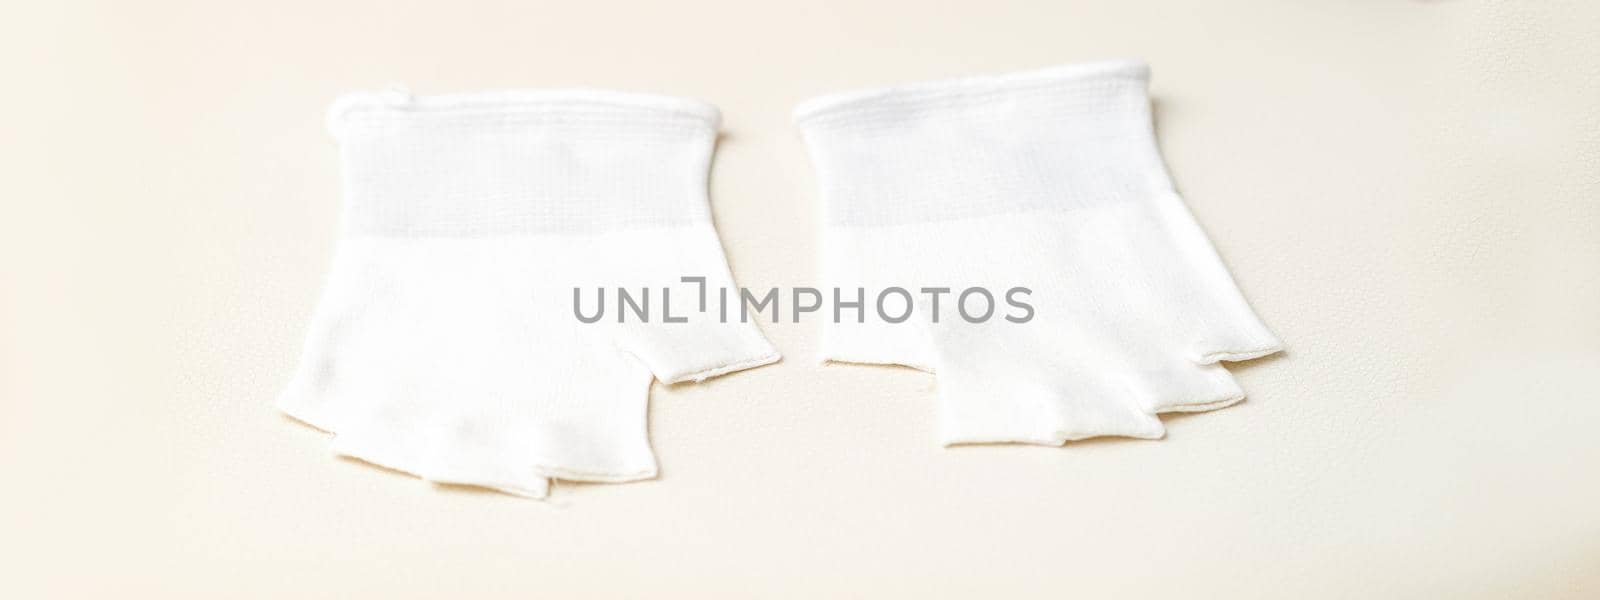 White bamboo fingerless inner gloves for cosmetic procedures lying on white. by okskukuruza